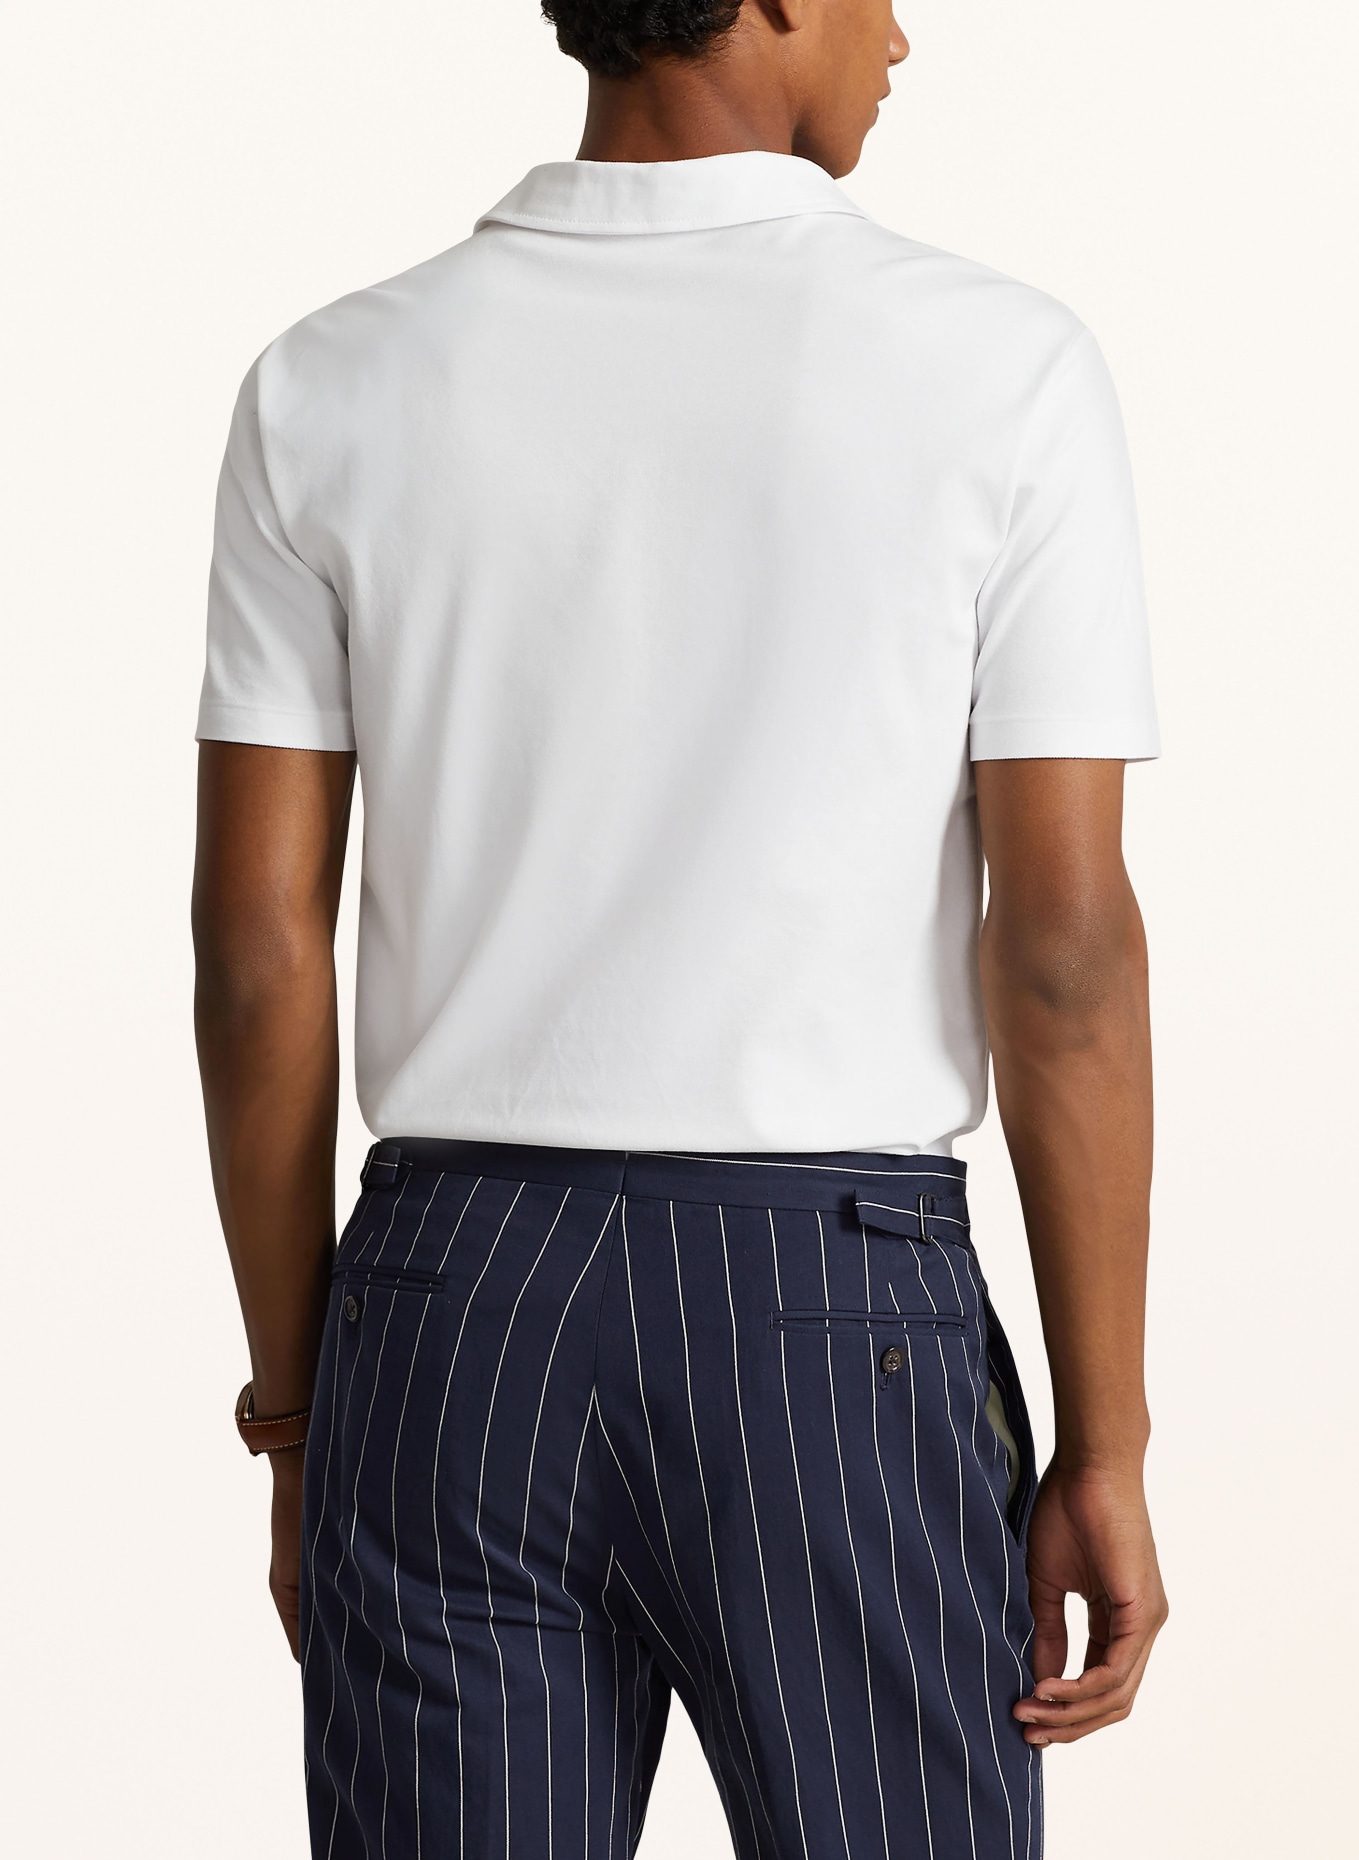 POLO RALPH LAUREN Piqué polo shirt classic fit, Color: WHITE (Image 3)